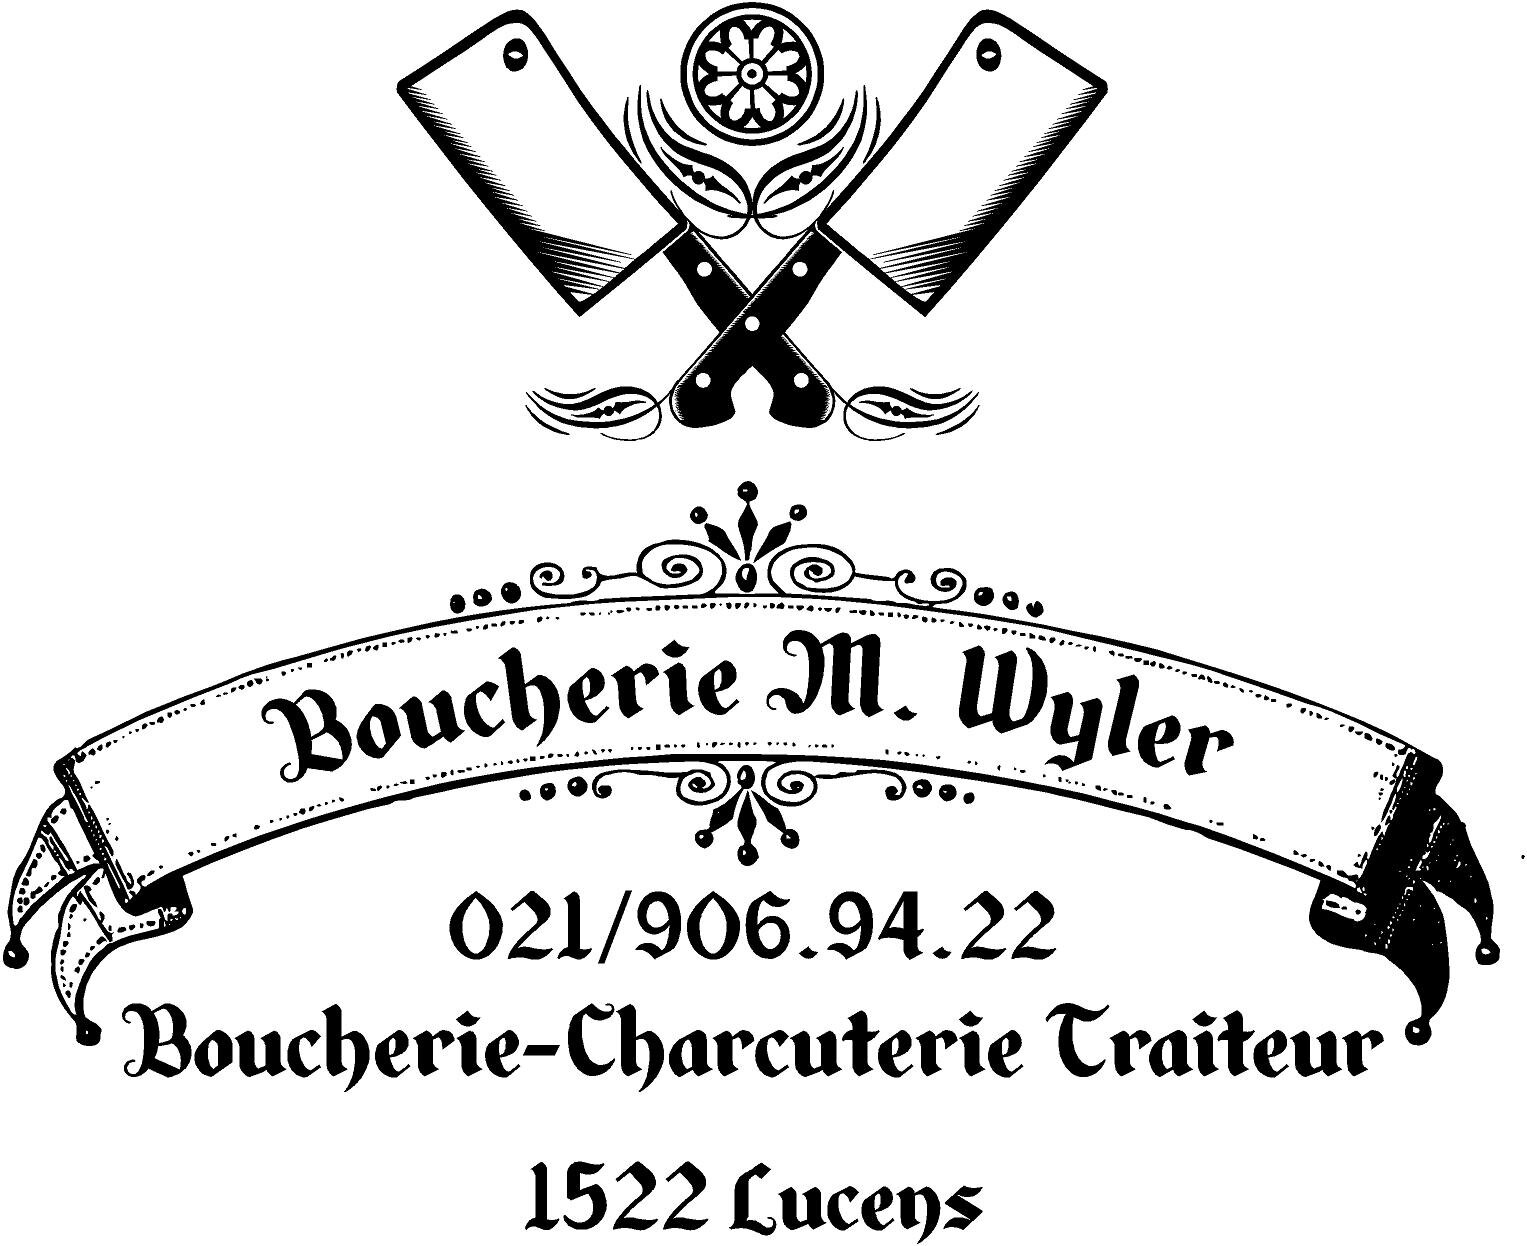 Boucherie Wyler.jpg